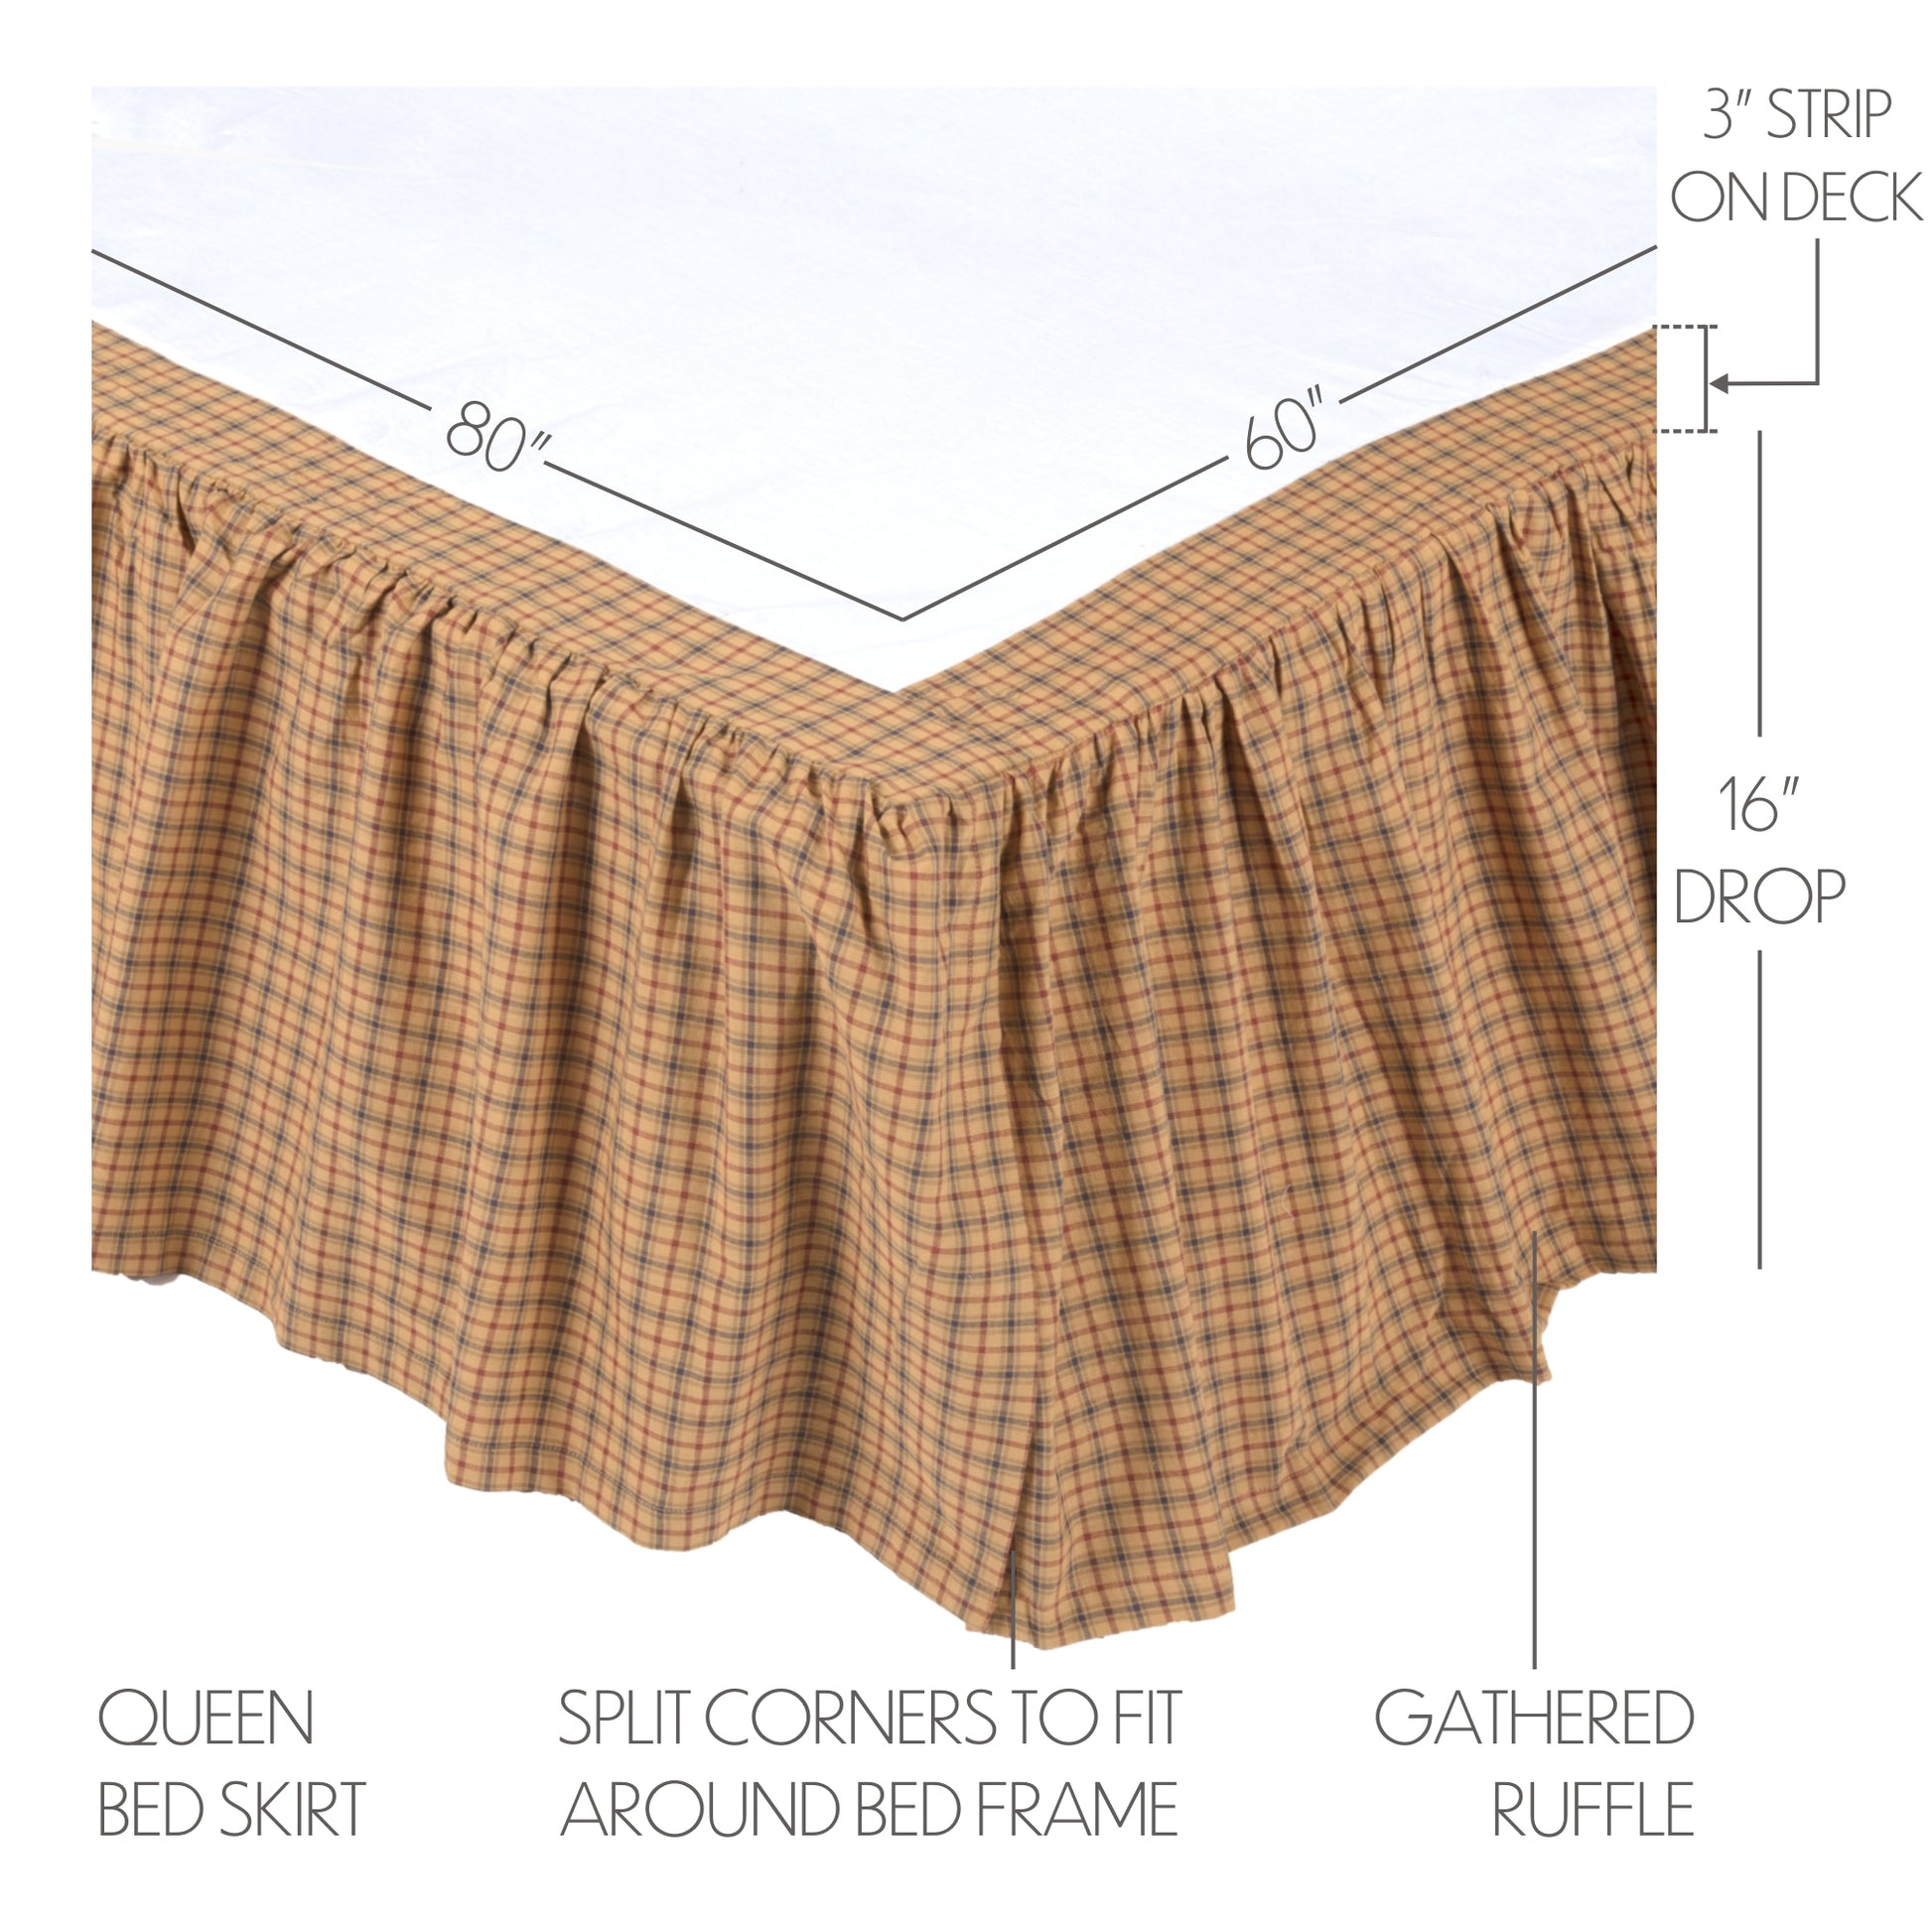 10332-Millsboro-Queen-Bed-Skirt-60x80x16-image-1